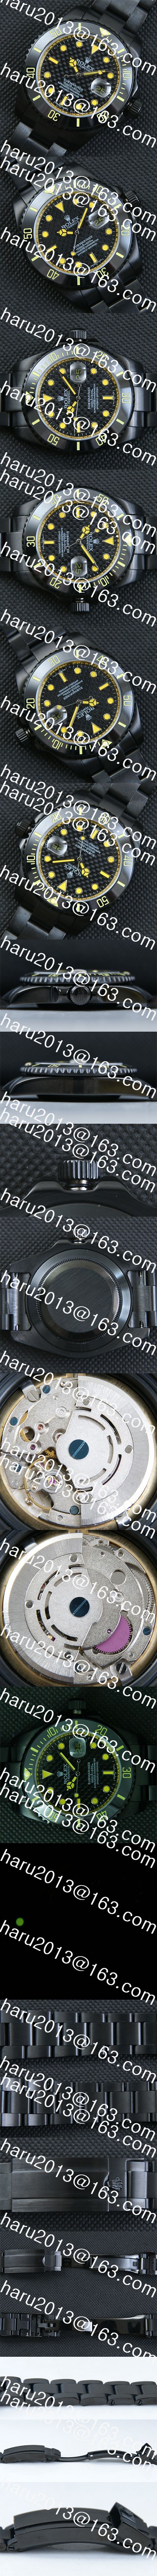 高級感を演出 ROLEX サブマリーナー スーパーコピー時計 Asian 21600振動 デイト表示 ブラック文字盤